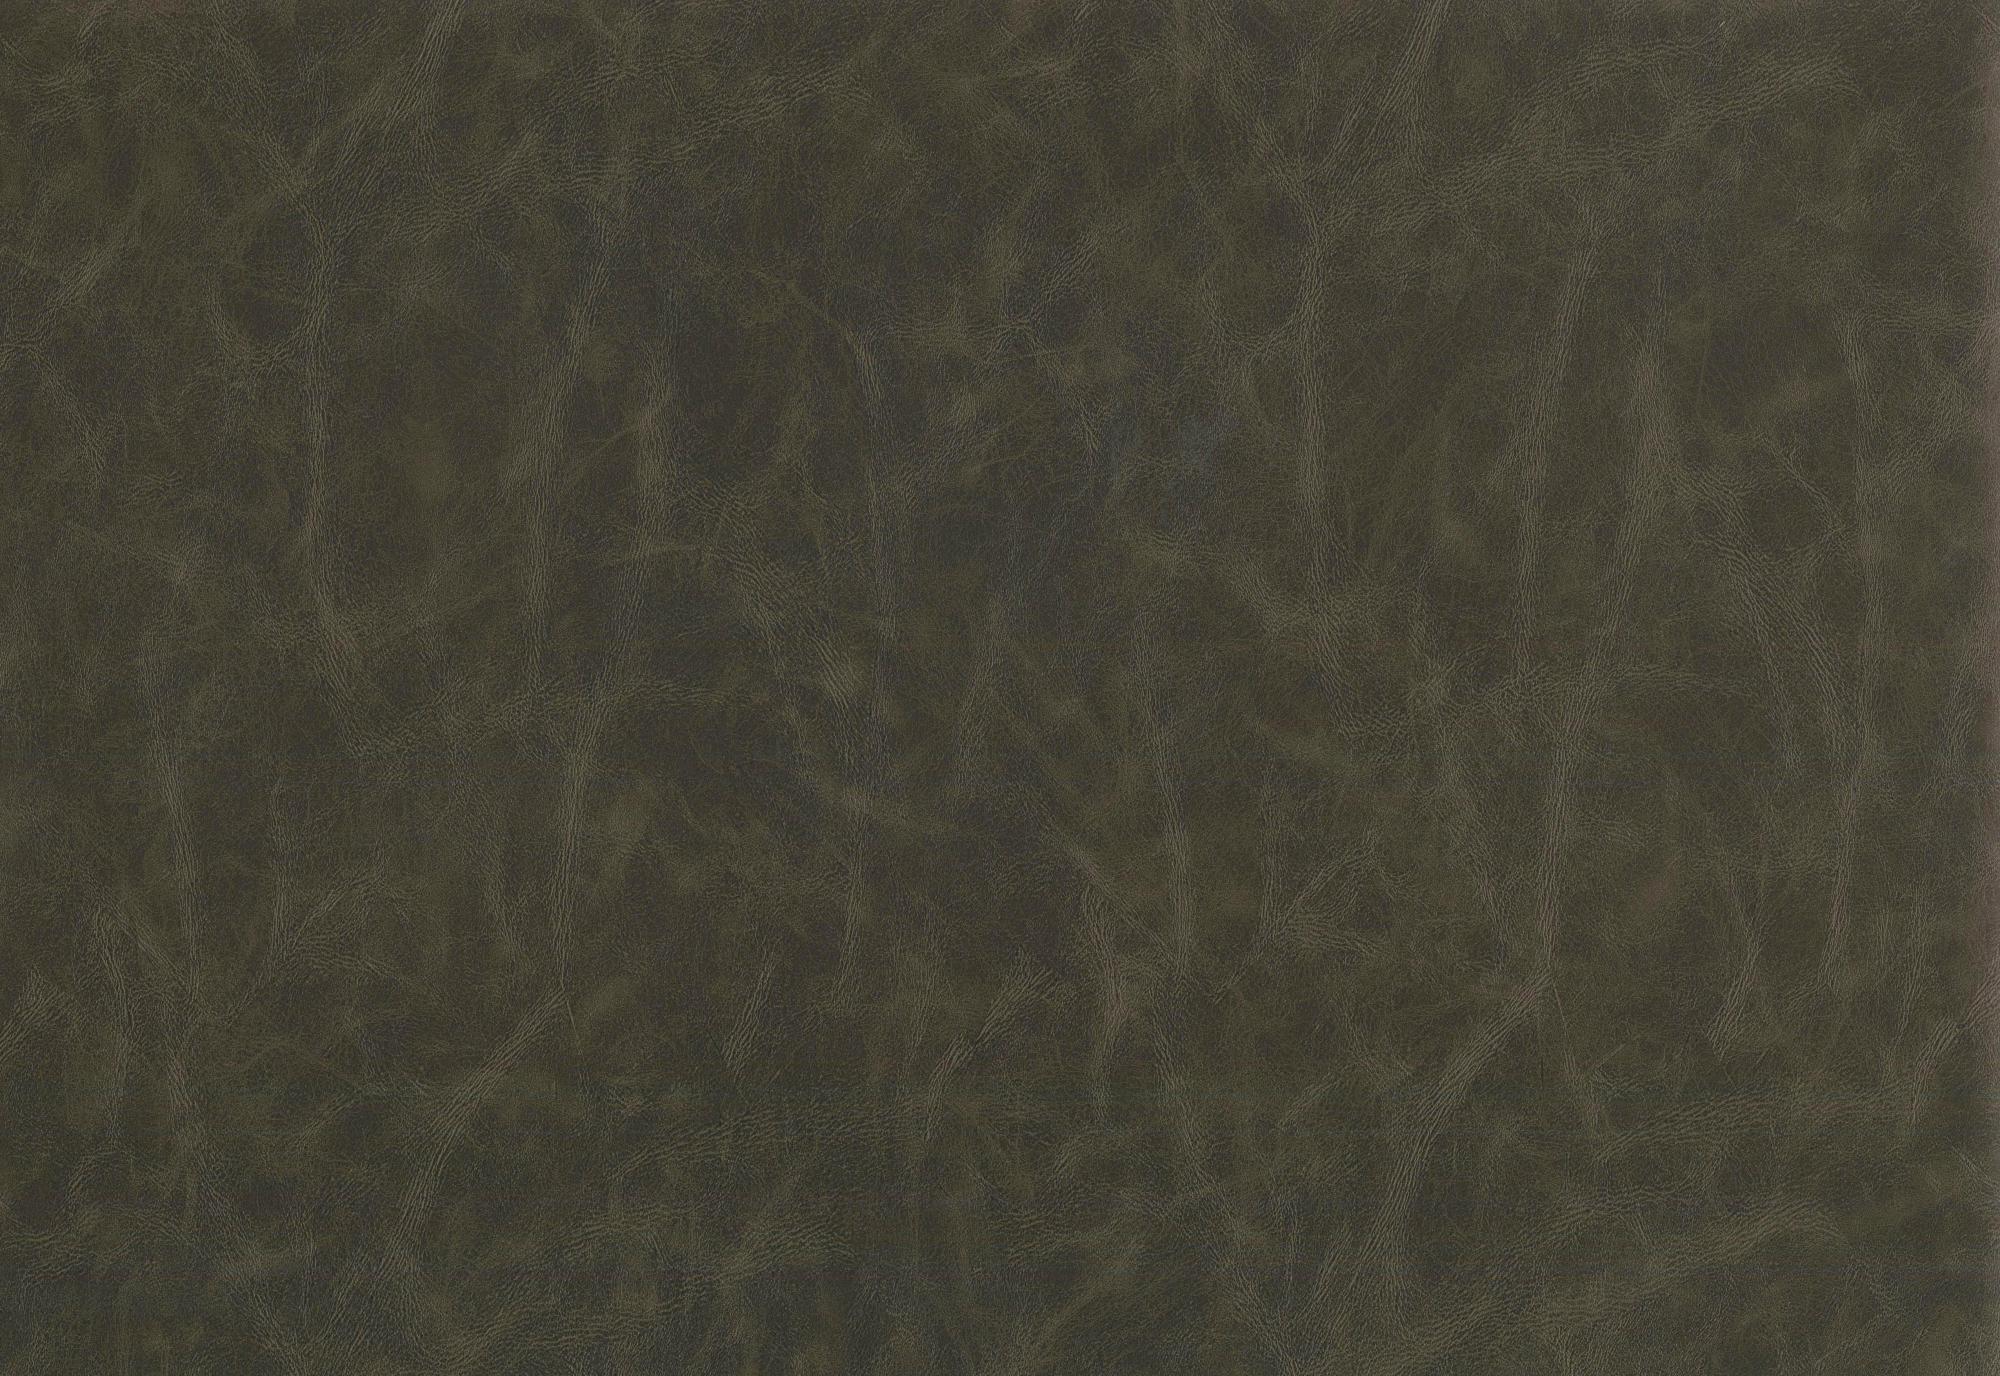 Tela al corte tapicería imitación piel prima olive(oliva) ancho 140 cm